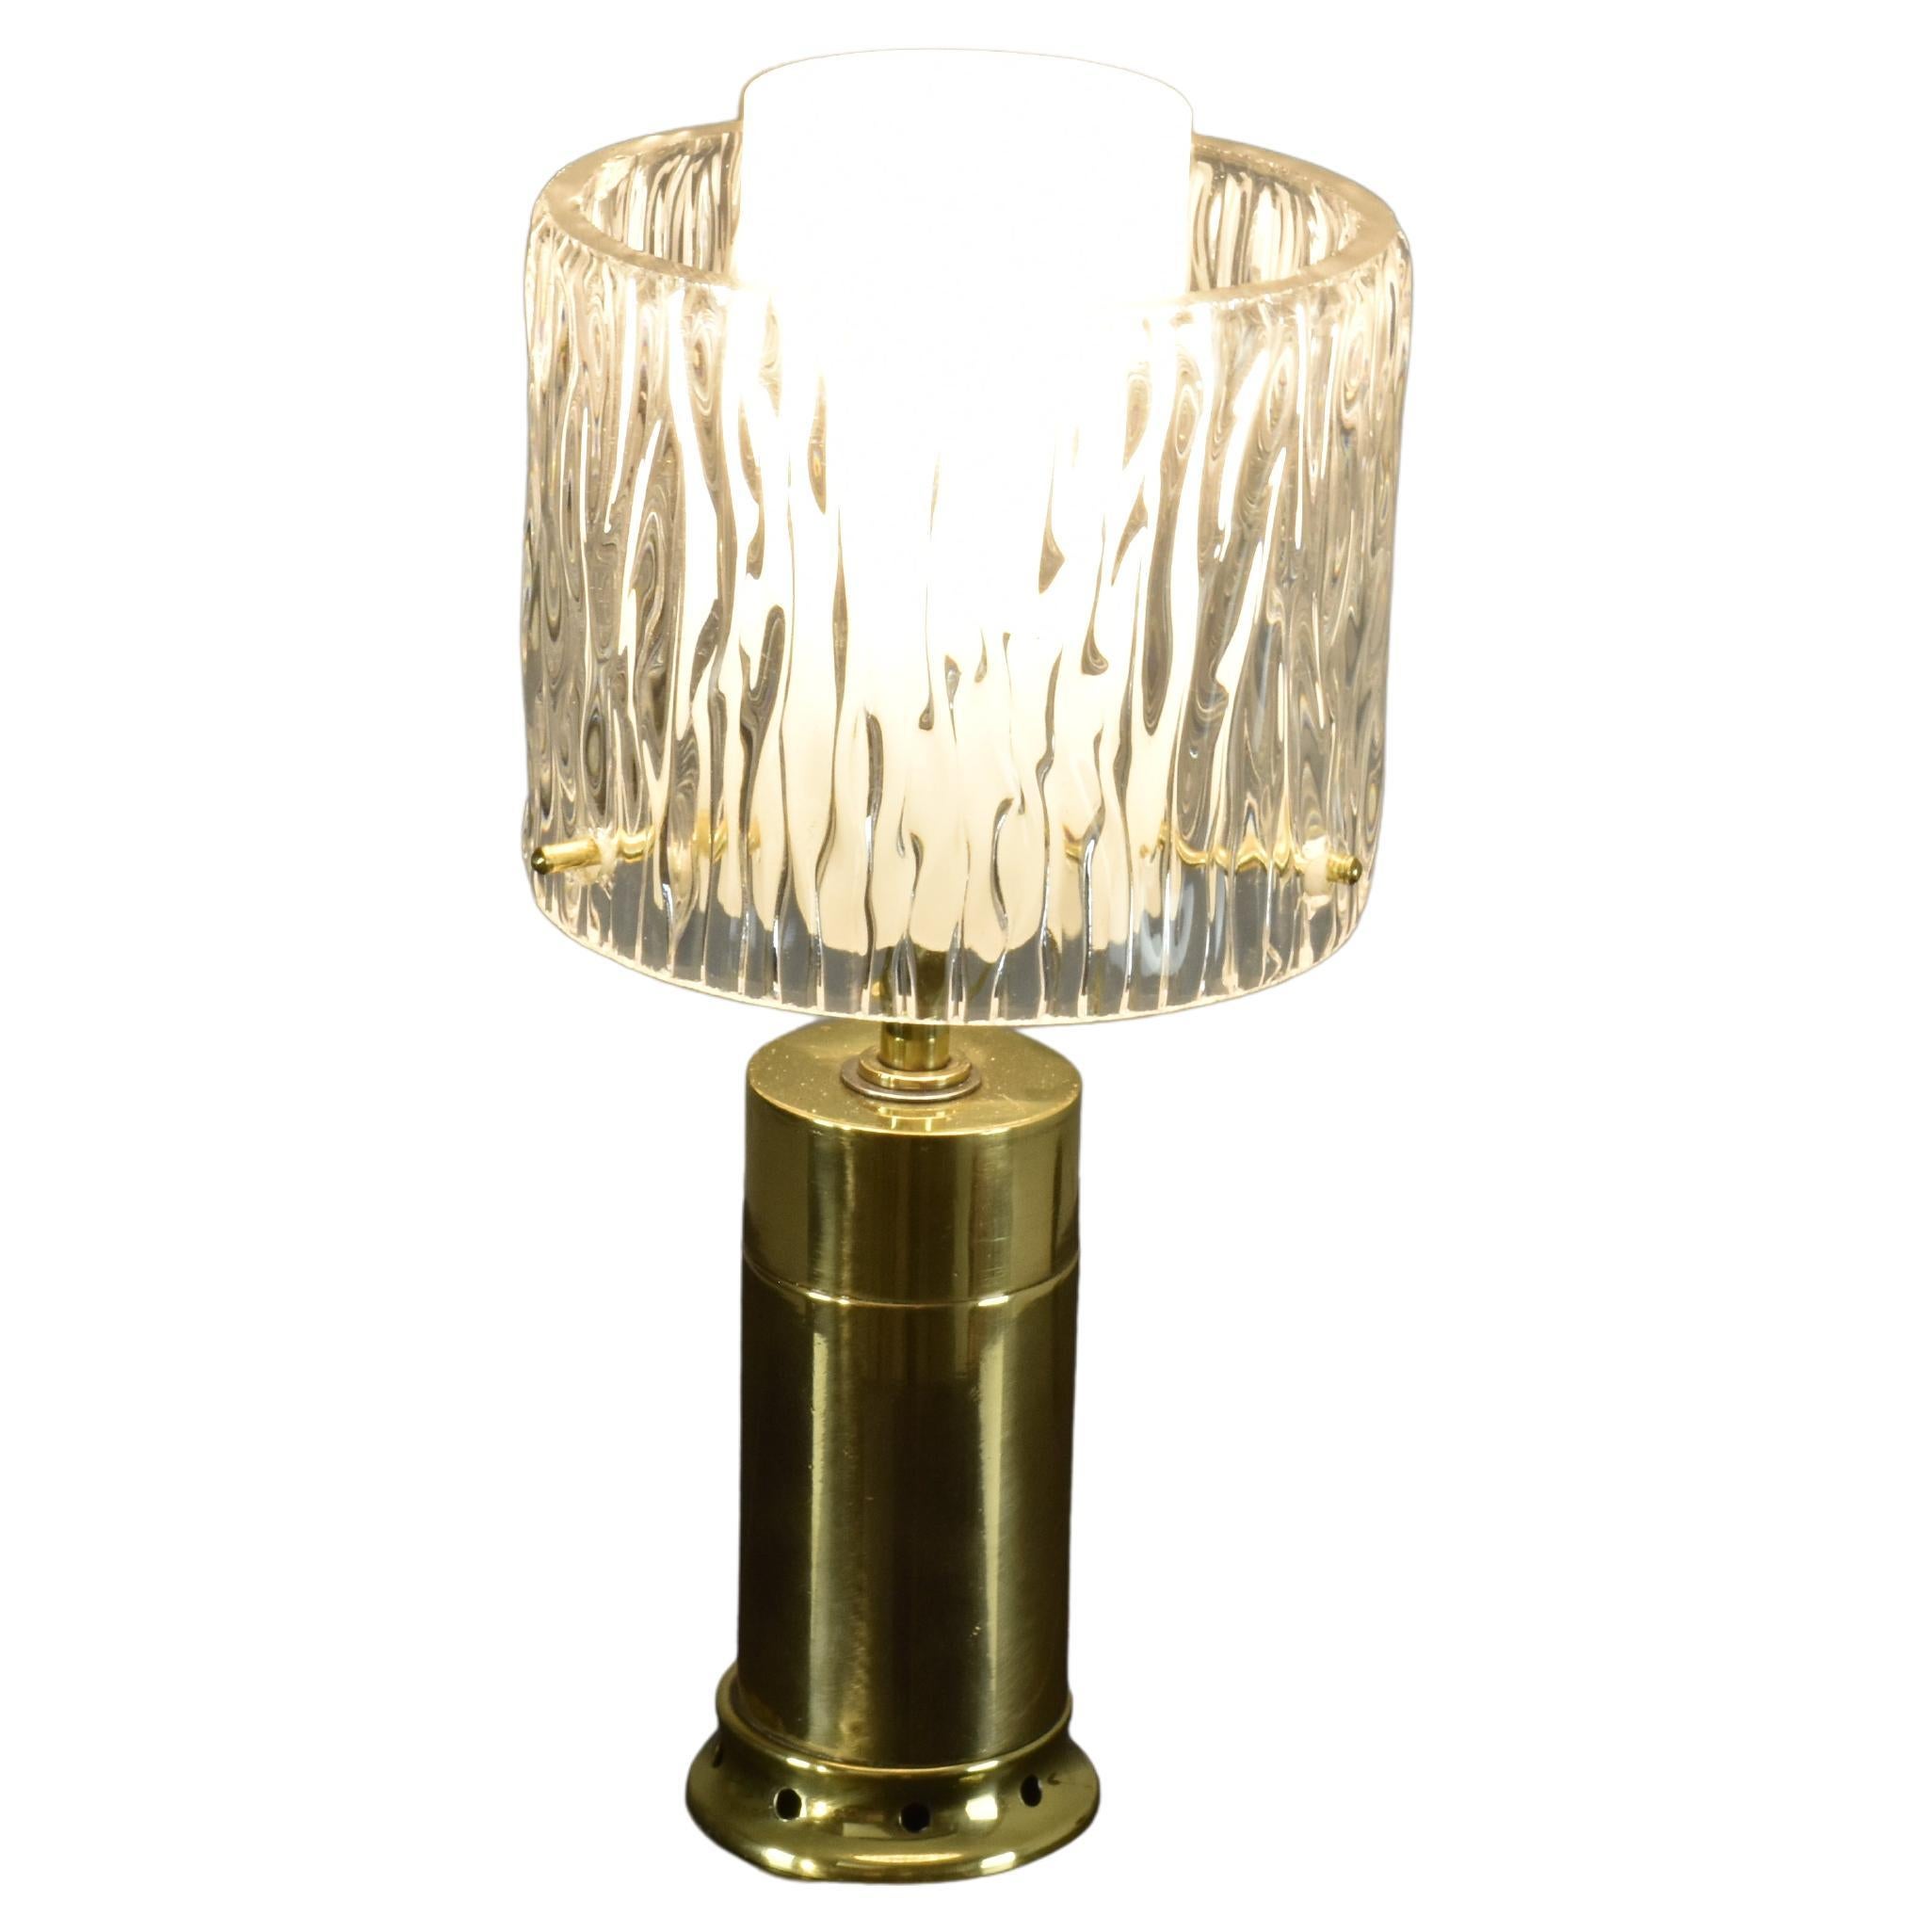 Eine schöne, flippige italienische Tischlampe aus den 1970er Jahren mit einem eleganten Messingfuß und einem doppelten zylinderförmigen Schirm. Der innere Schirm ist höher und aus Milchglas, der äußere Schirm aus schönem, strukturiertem Glas. Ein